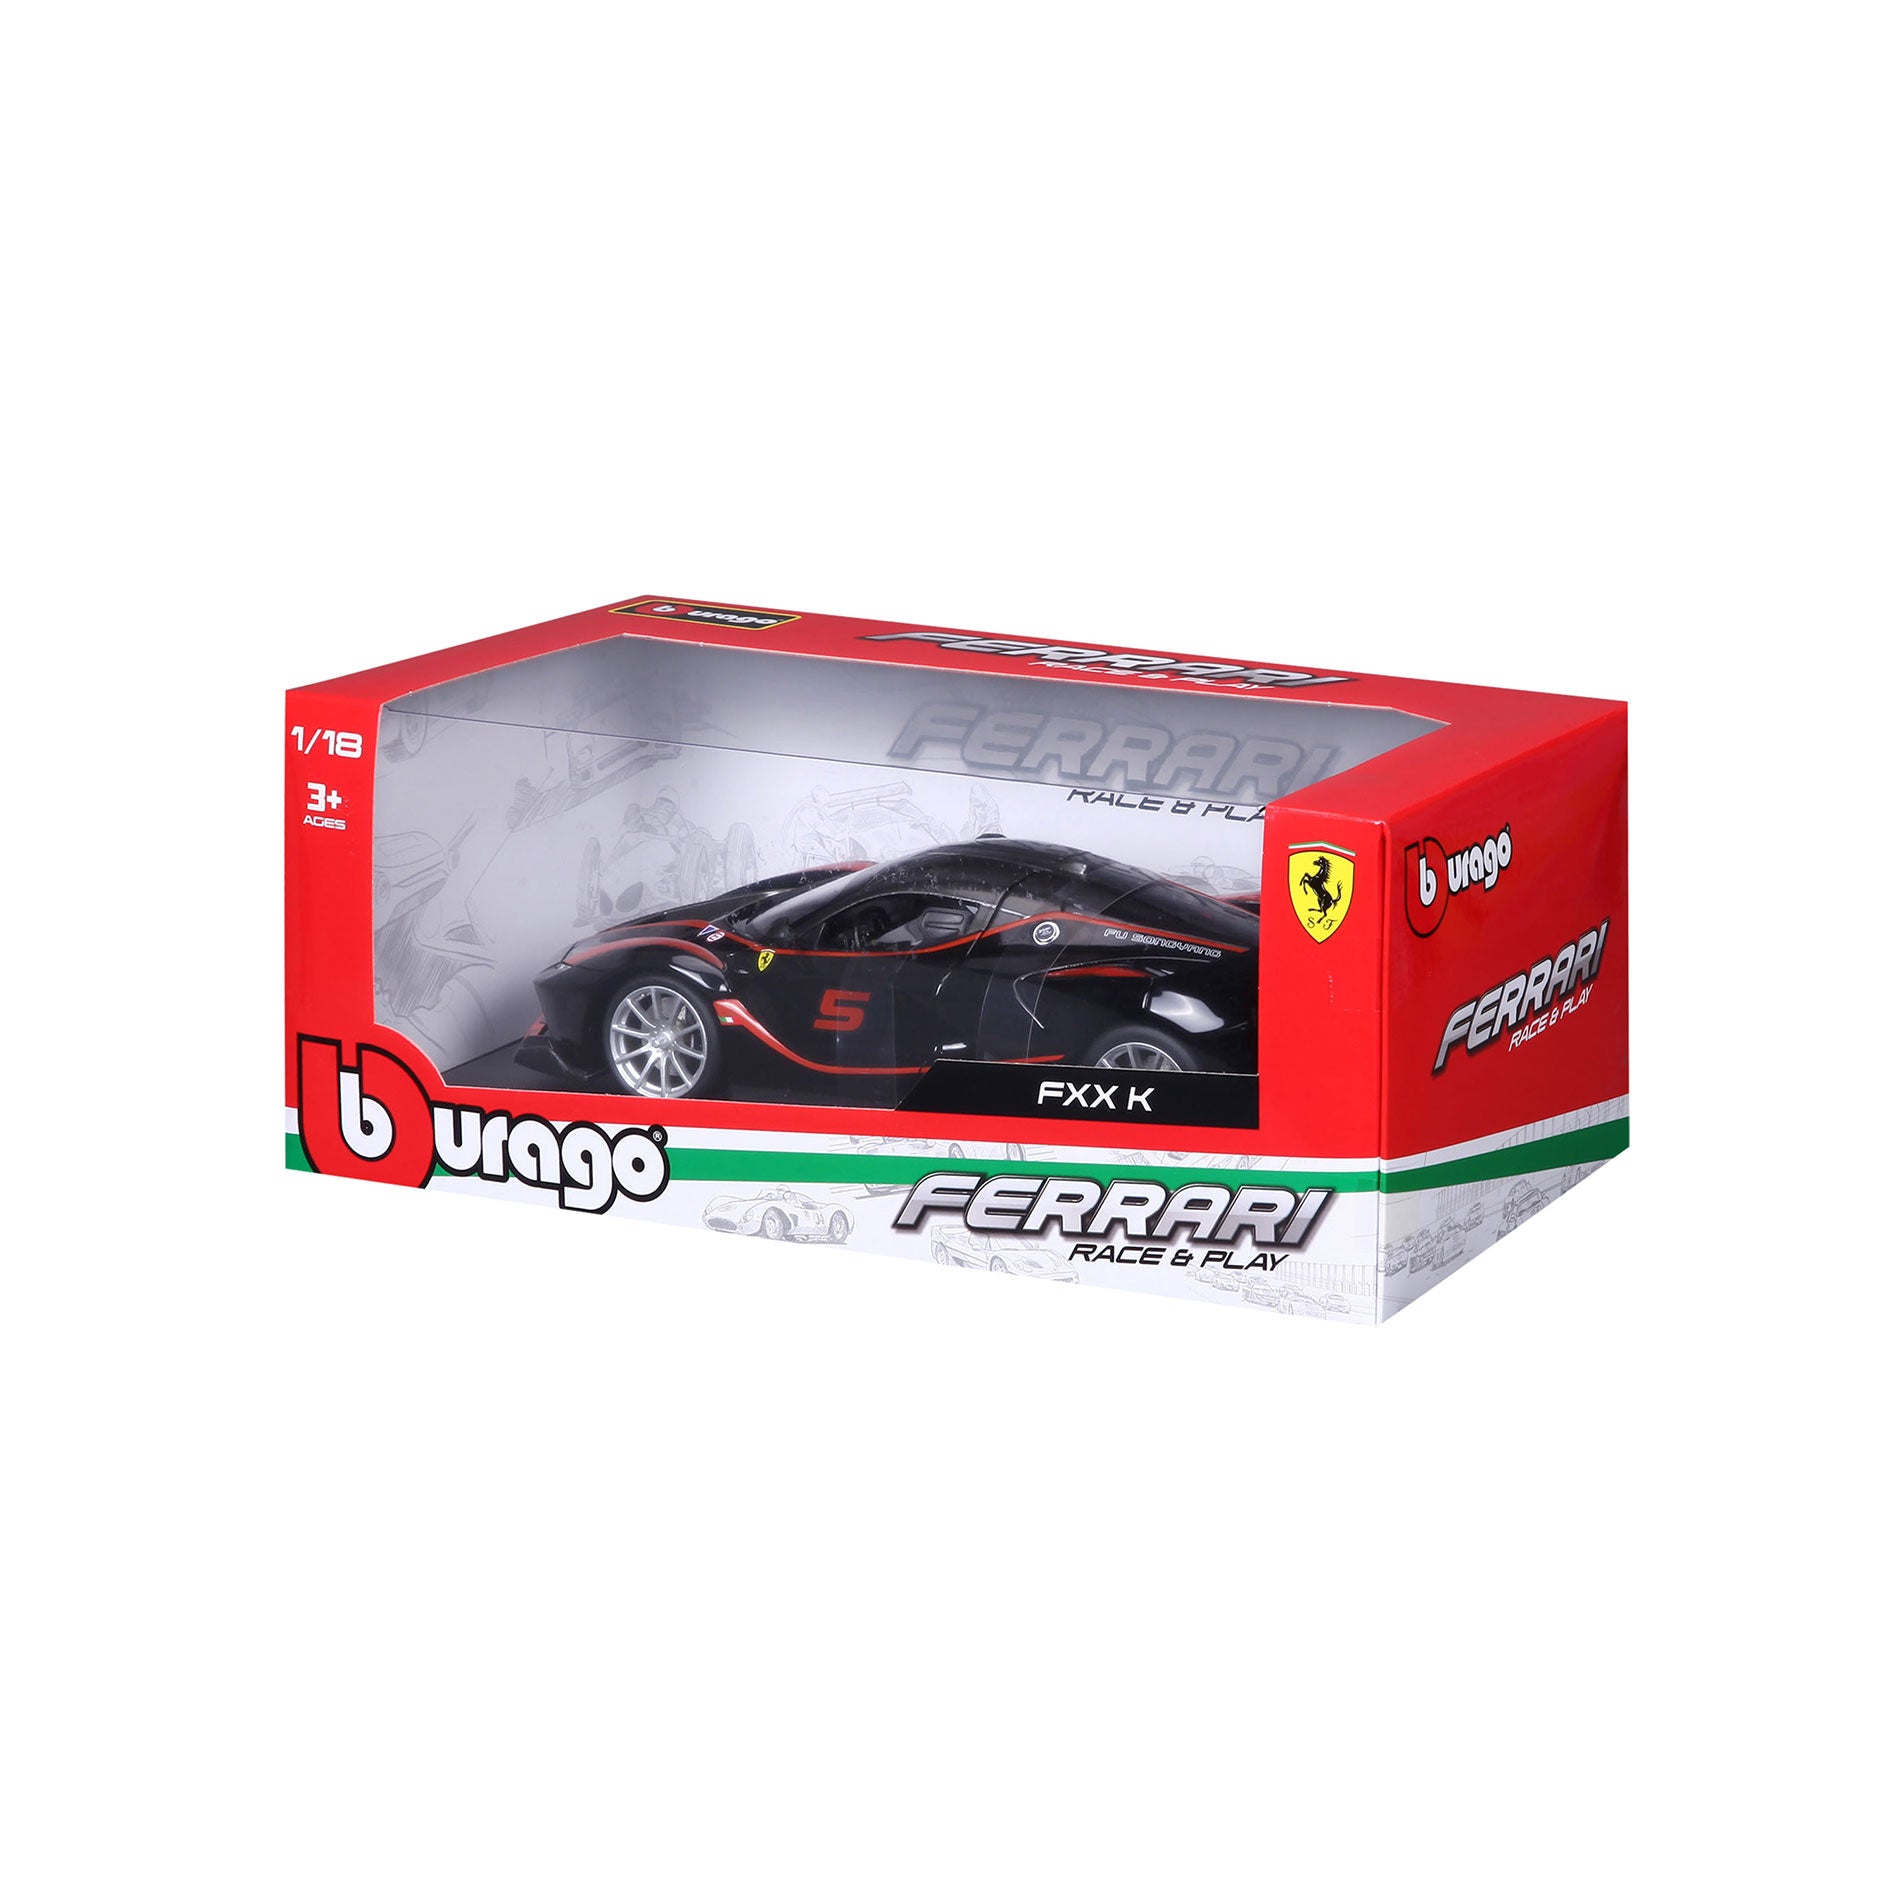 Bburago 1:18 Ferrari FXX-K #10 rouge / noir 18-16010 modèle voiture  18-16010 4893993160105